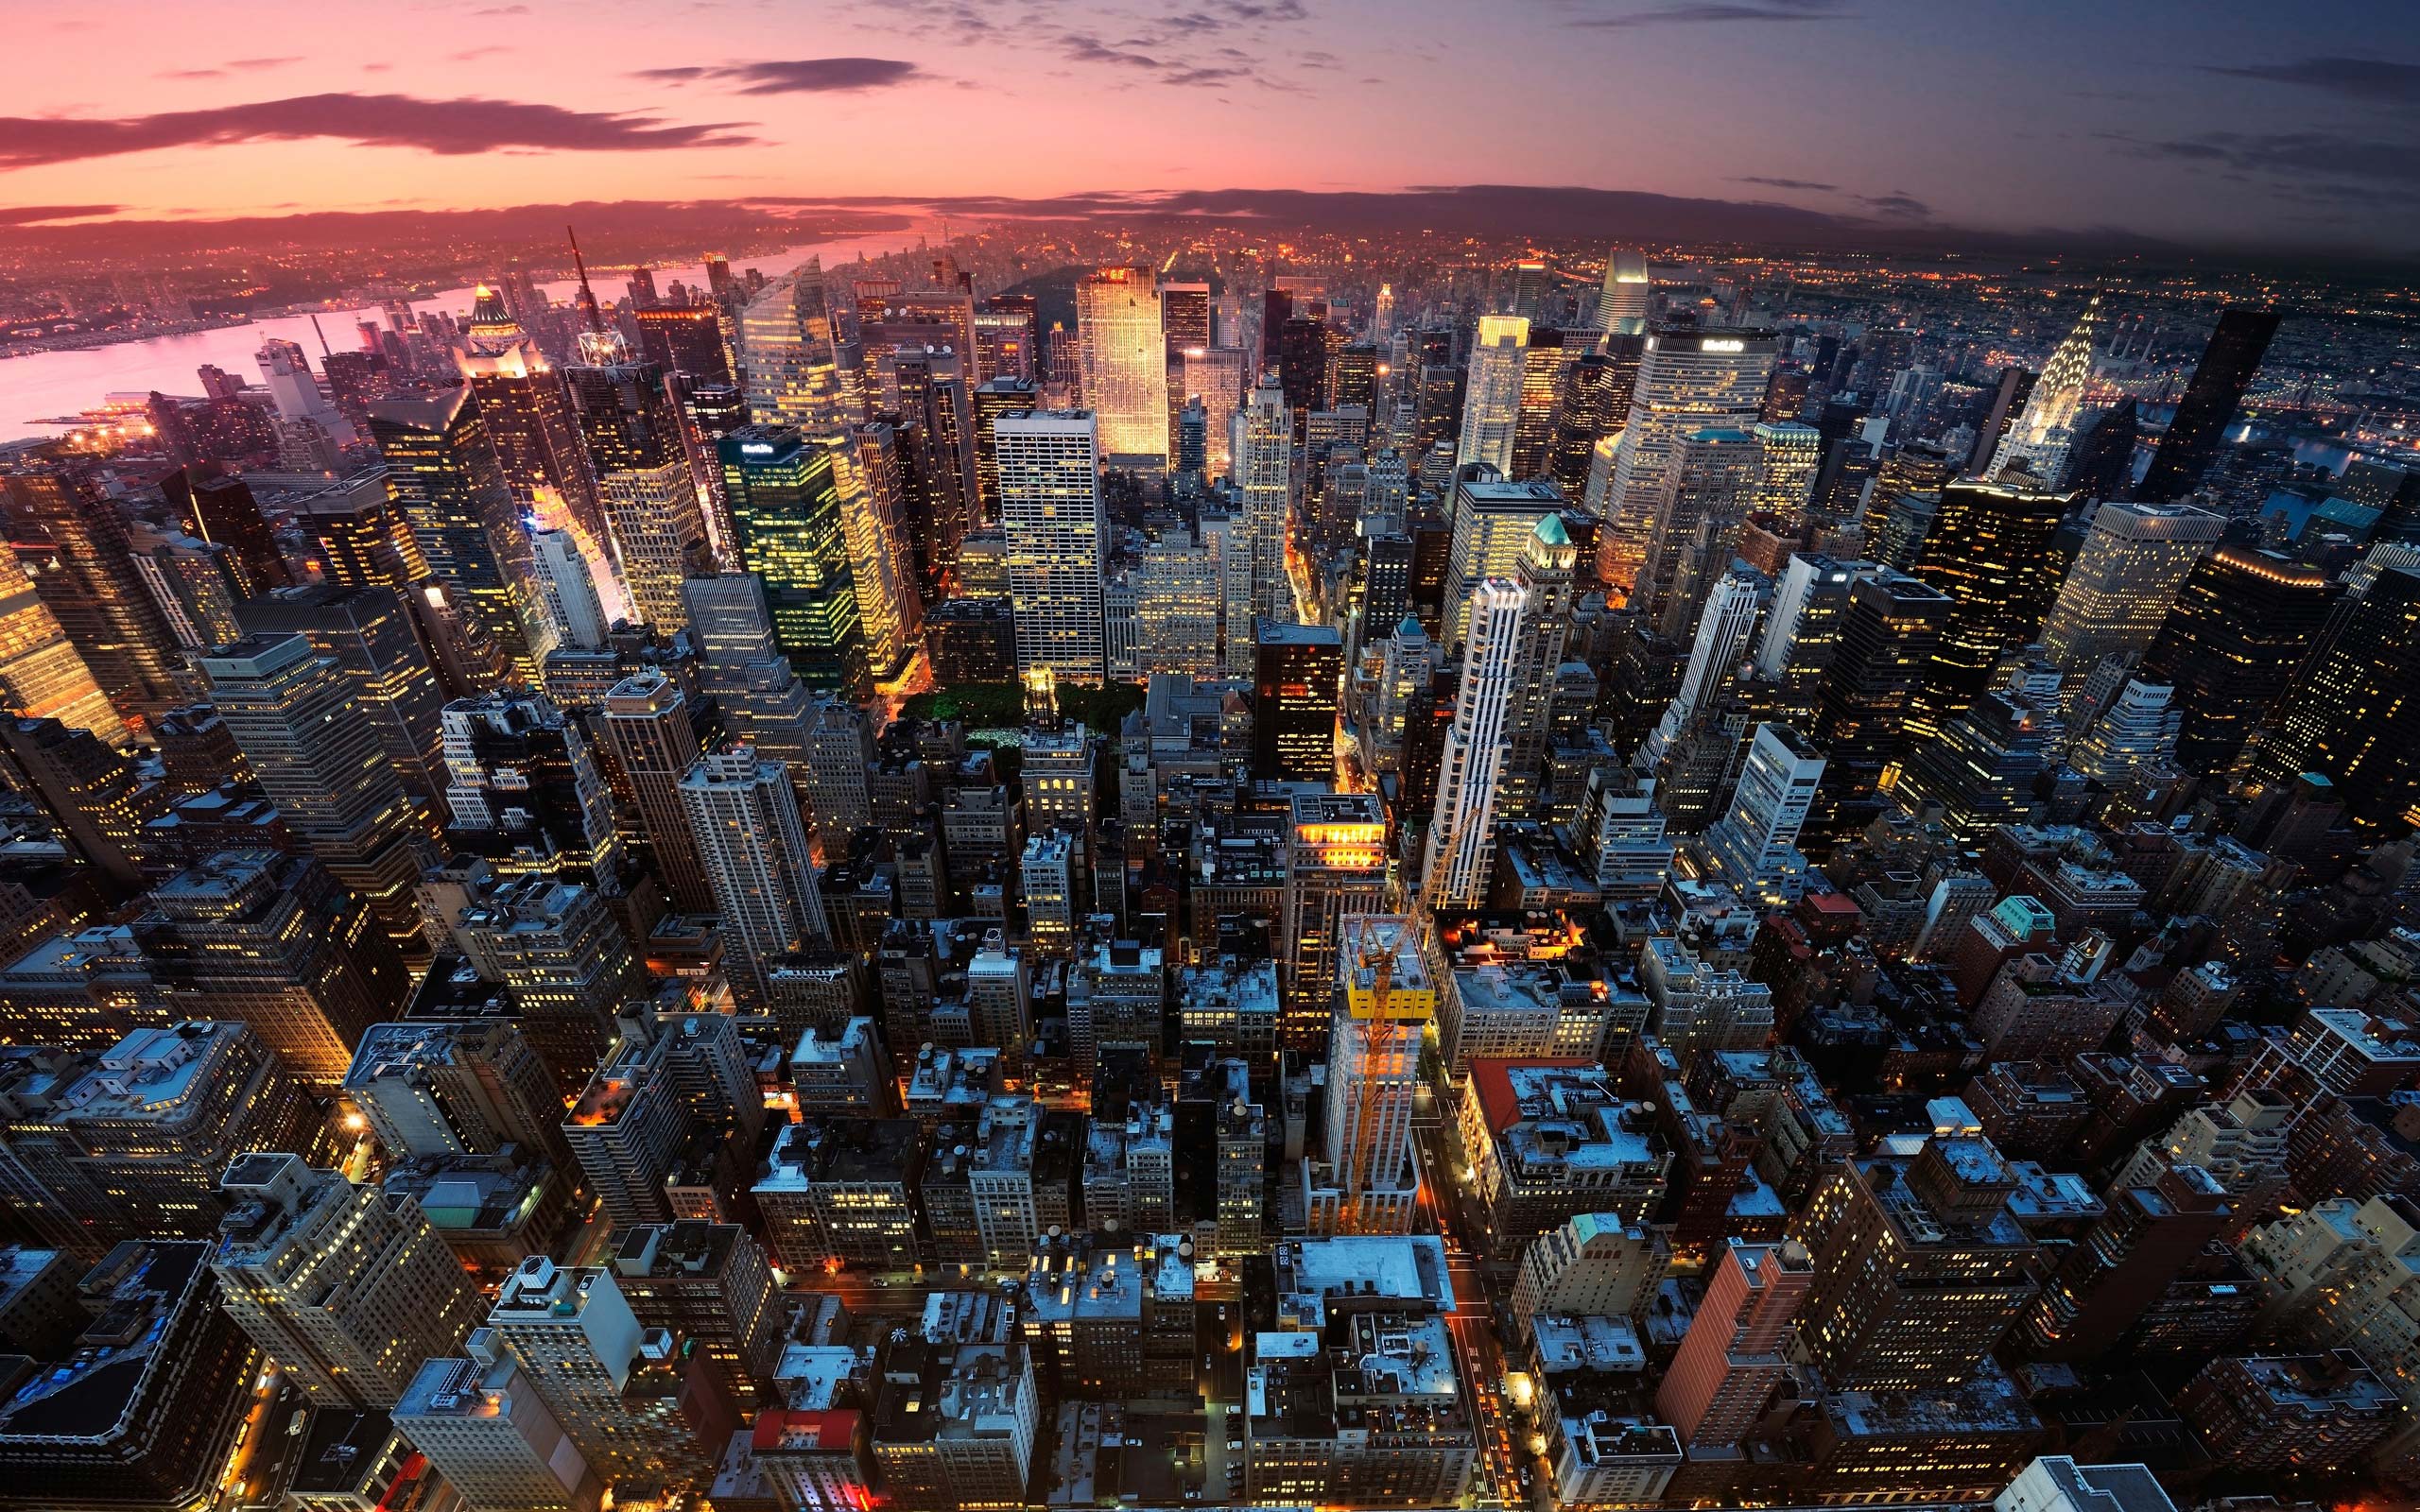 Hình nền 4K thành phố New York: Tận hưởng độ phân giải 4K của hình nền này, bạn sẽ được tha hồ ngắm nhìn Thành phố New York với đầy đủ chi tiết và sắc nét. Những điểm nhấn của thành phố như Empire State Building, Times Square và statue of liberty sẽ đưa bạn đến một cuộc phiêu lưu chưa từng có.